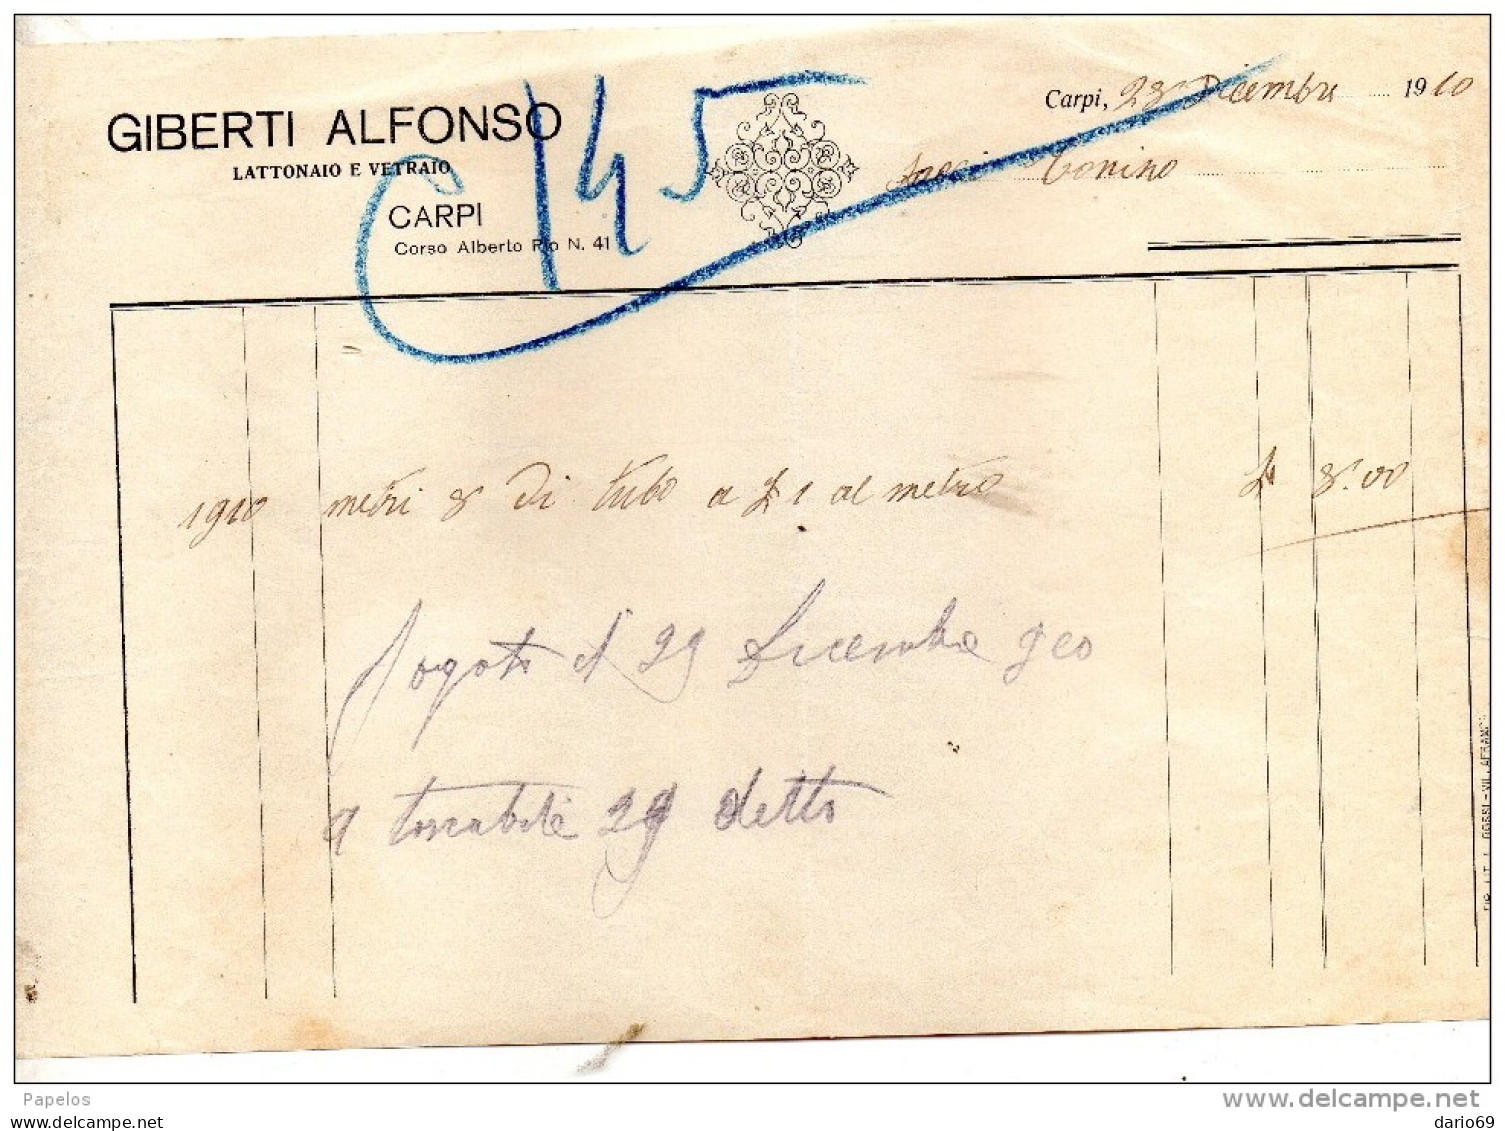 1910 CARPI - GIBERTI ALFONSO LATTONAIO E VETRAIO - Italie